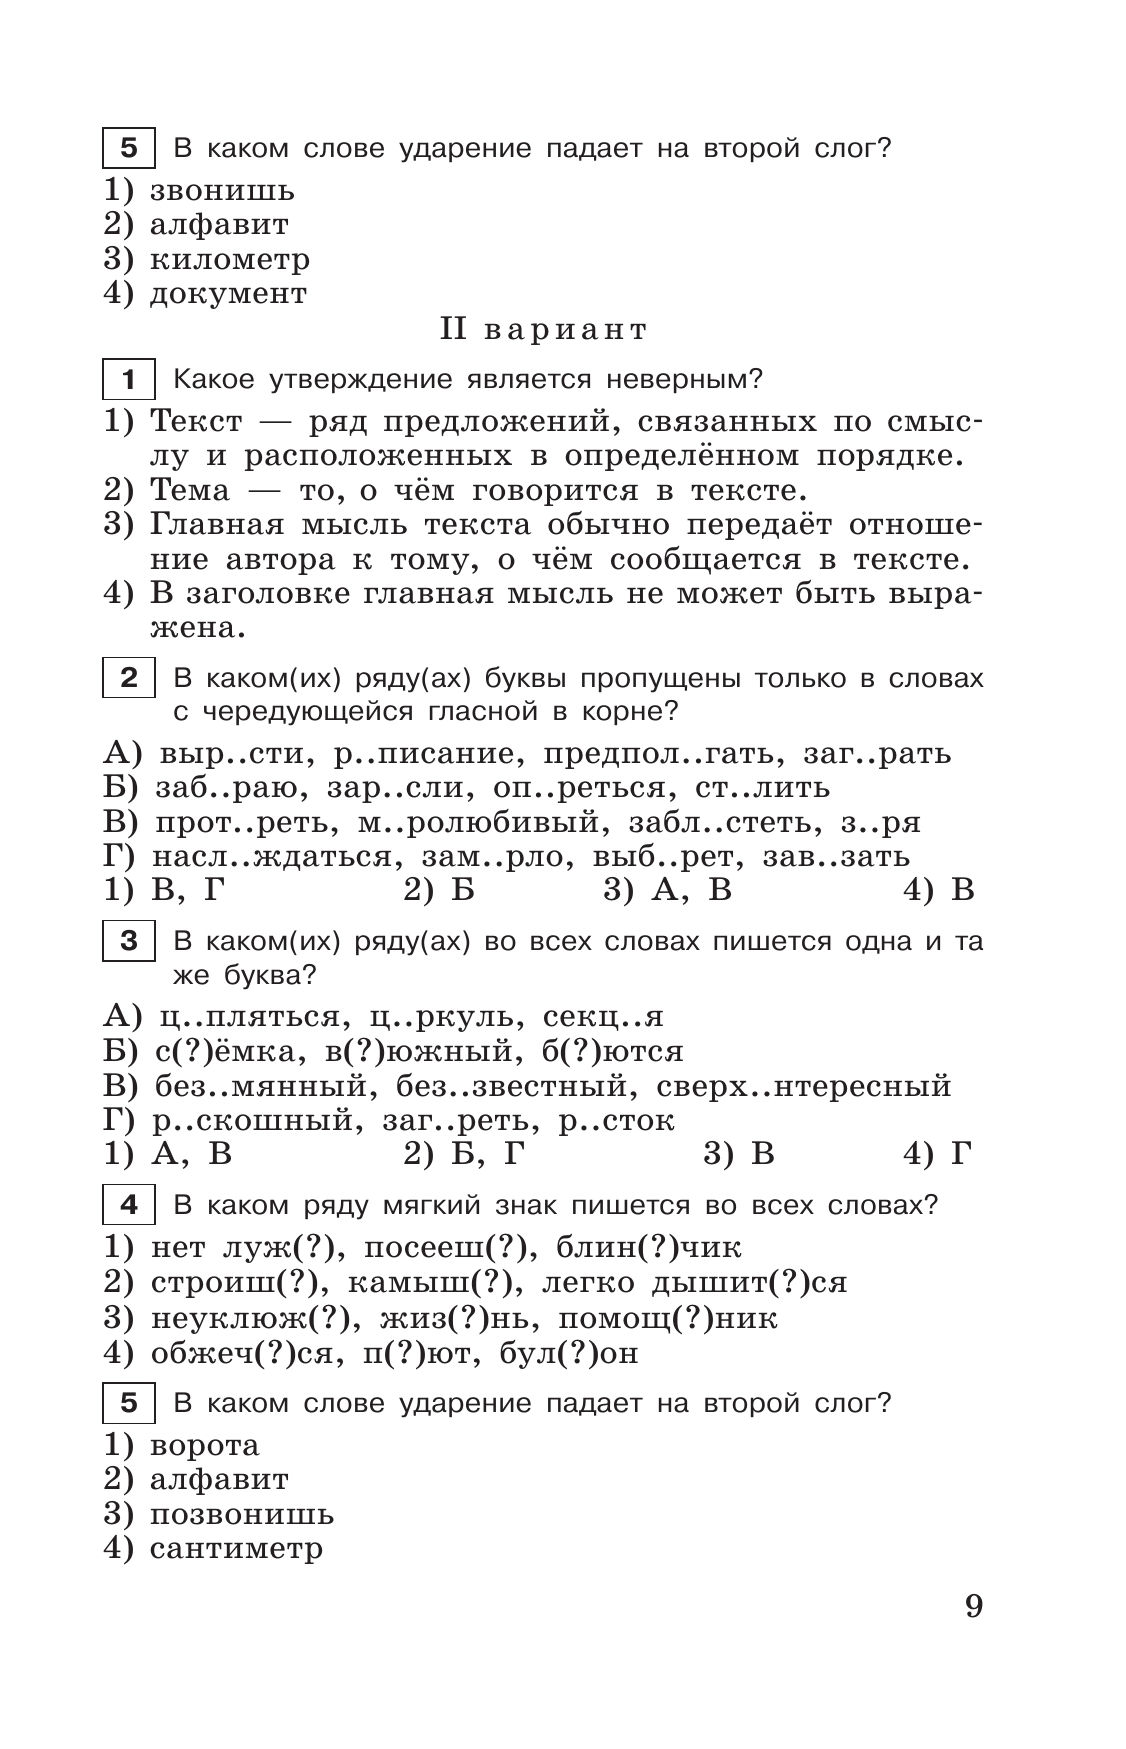 Тестовые задания по русскому языку. 6 класс. 11